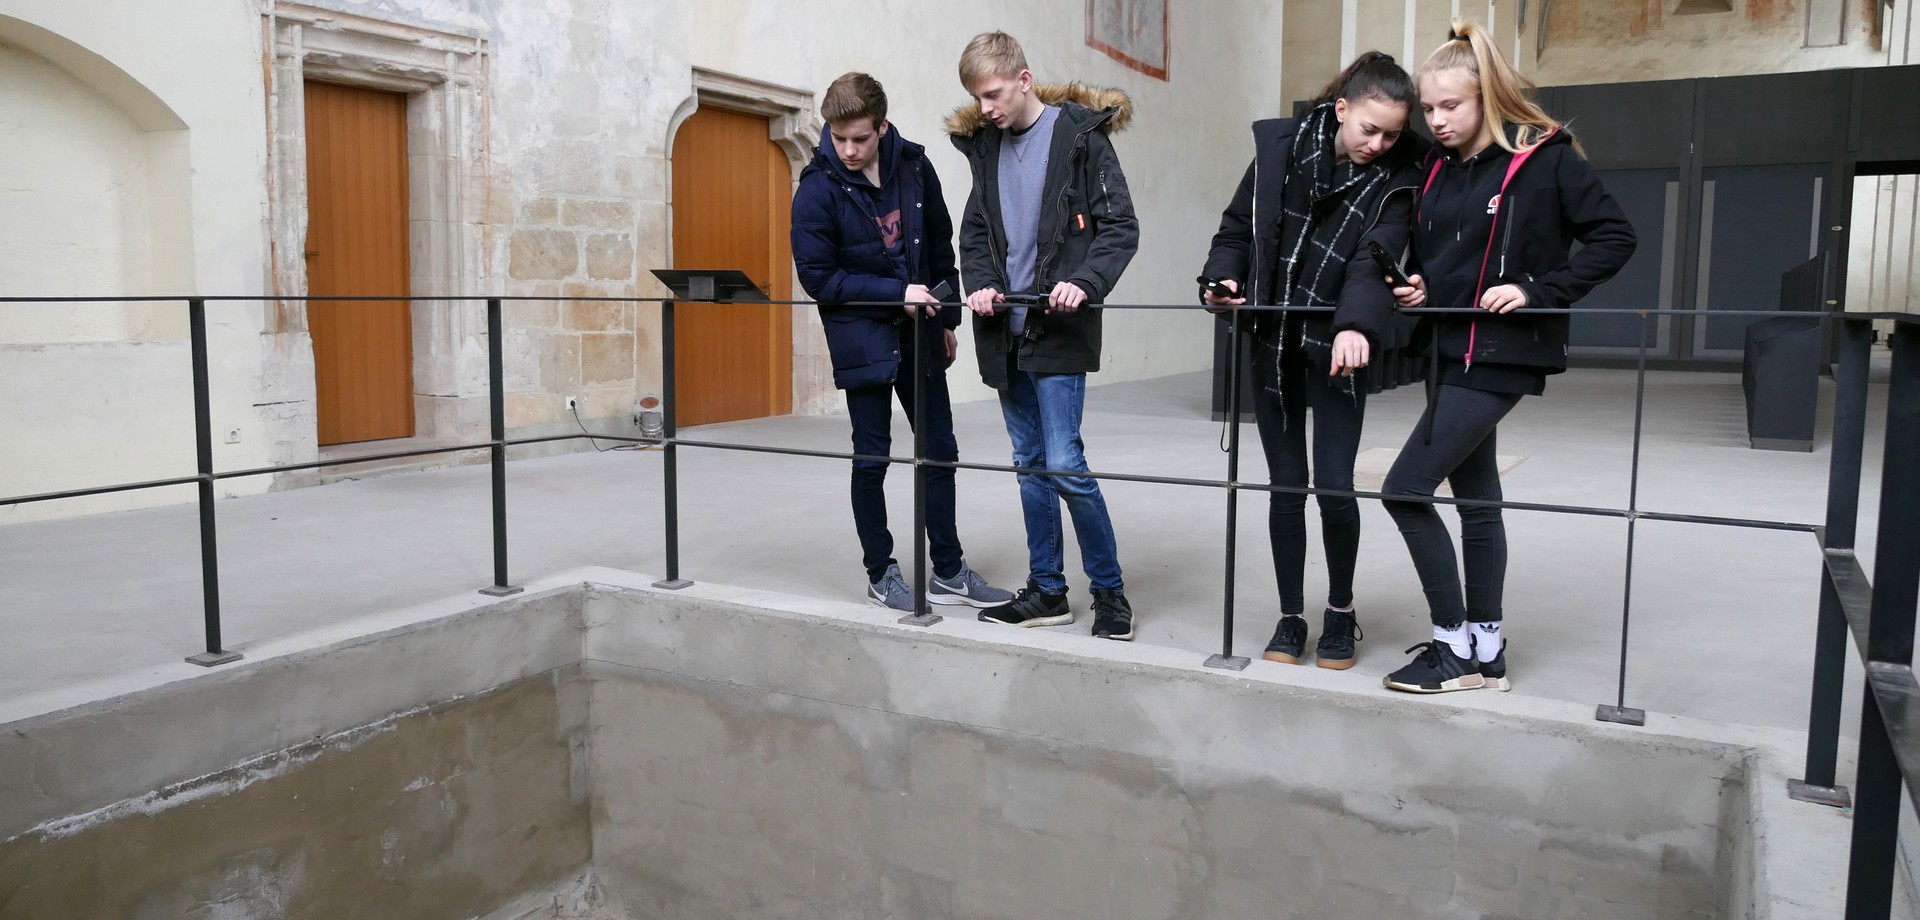 In einer Kirche stehen vier Jugendliche an einem Geländer und schauen in die davor liegende Grube.